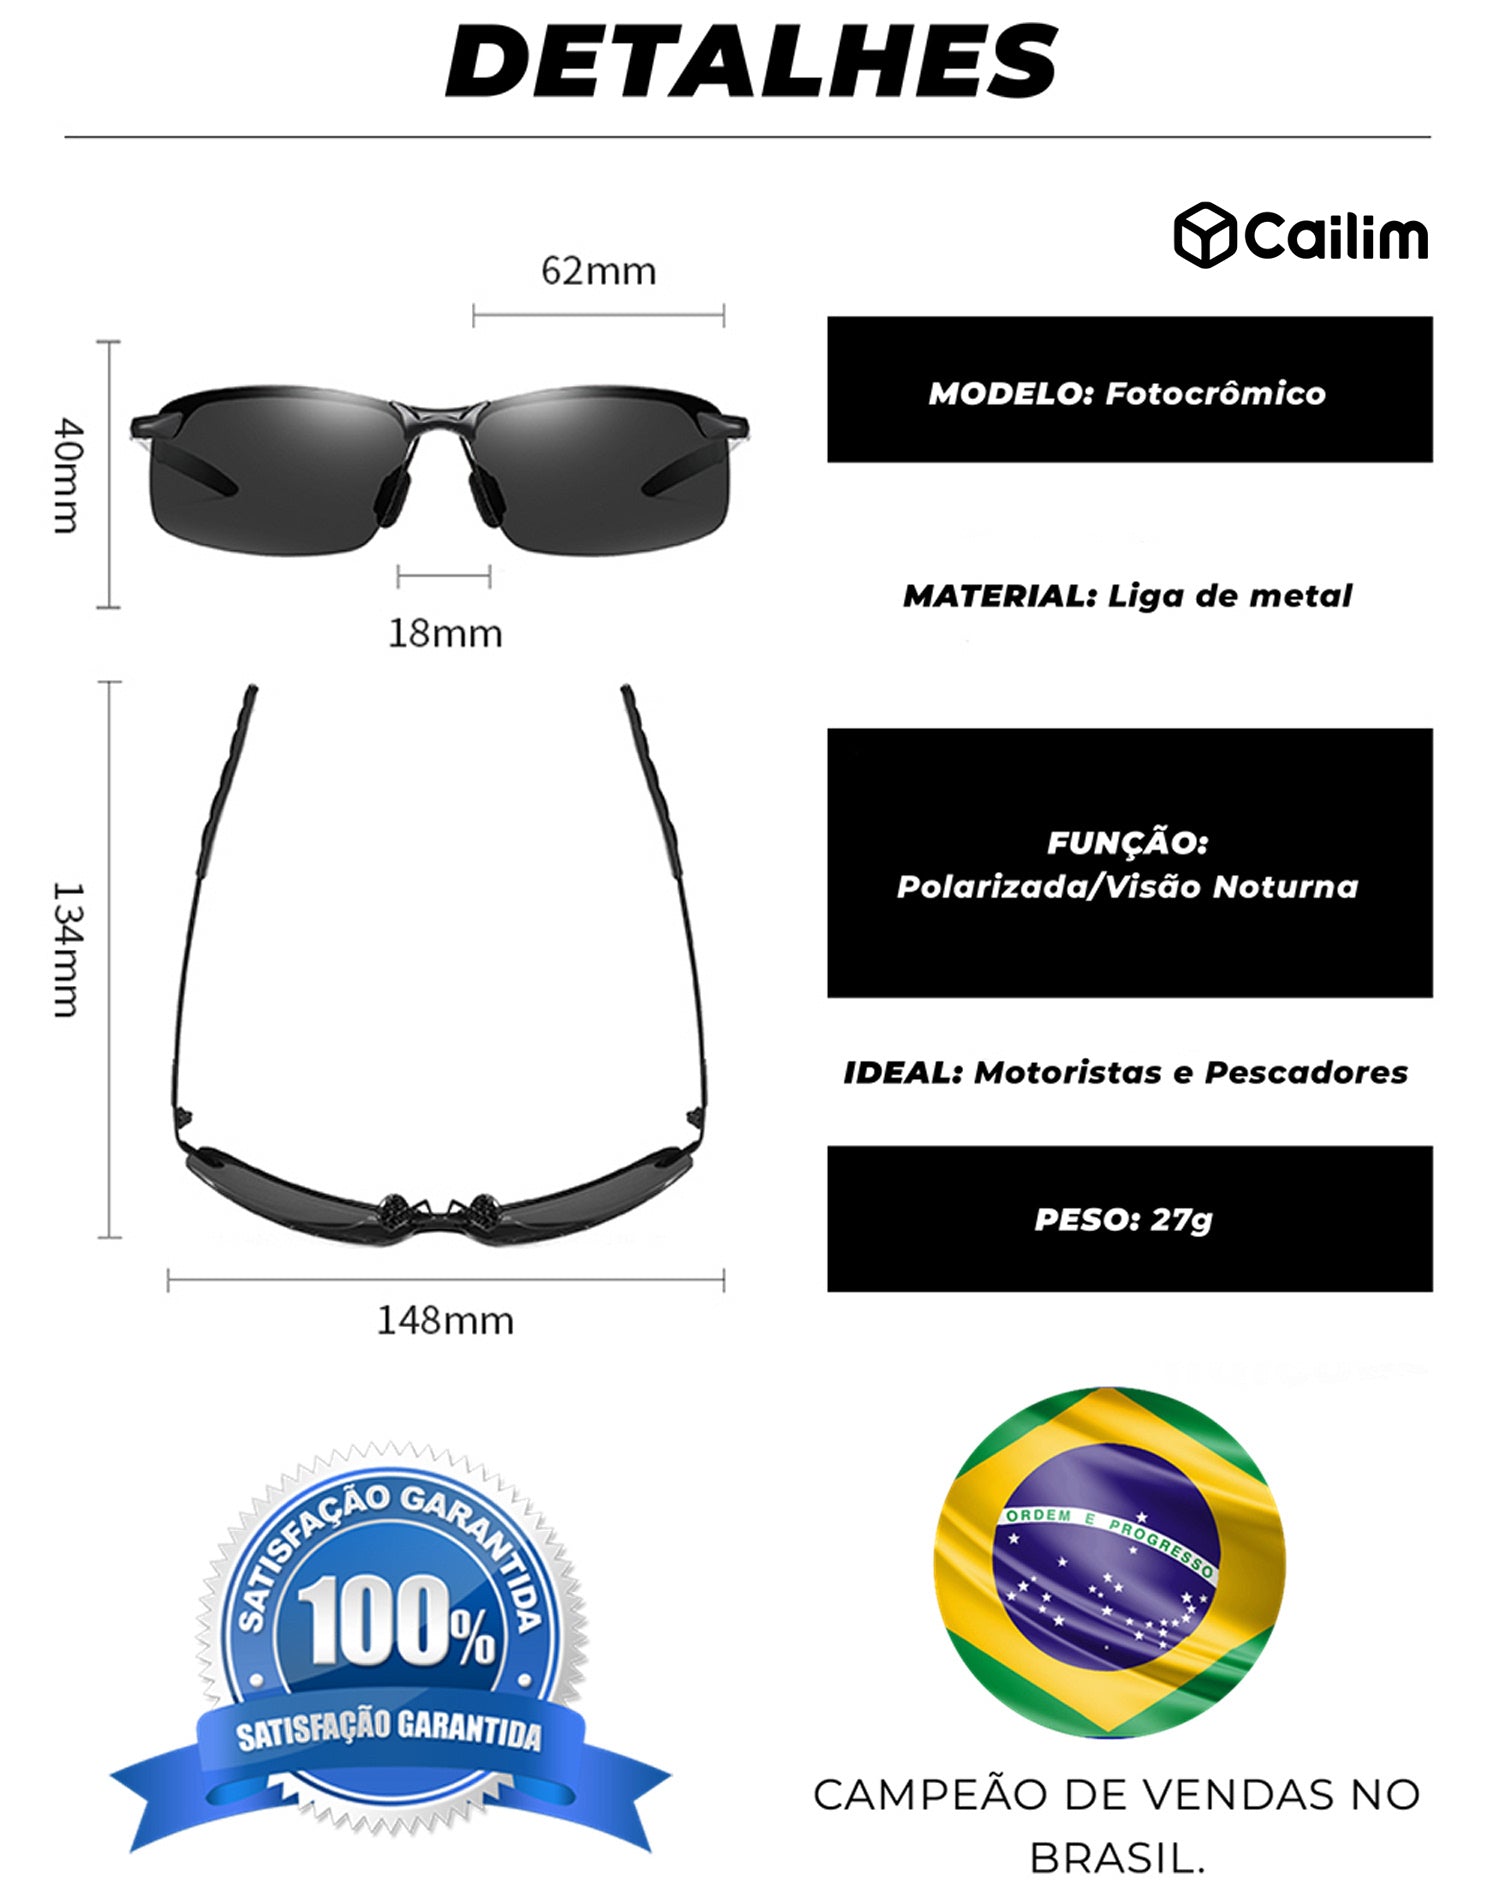 Óculos Militar Fotocrômico Polarizado Elimina Reflexos UltraVision- Motoristas e Pescadores